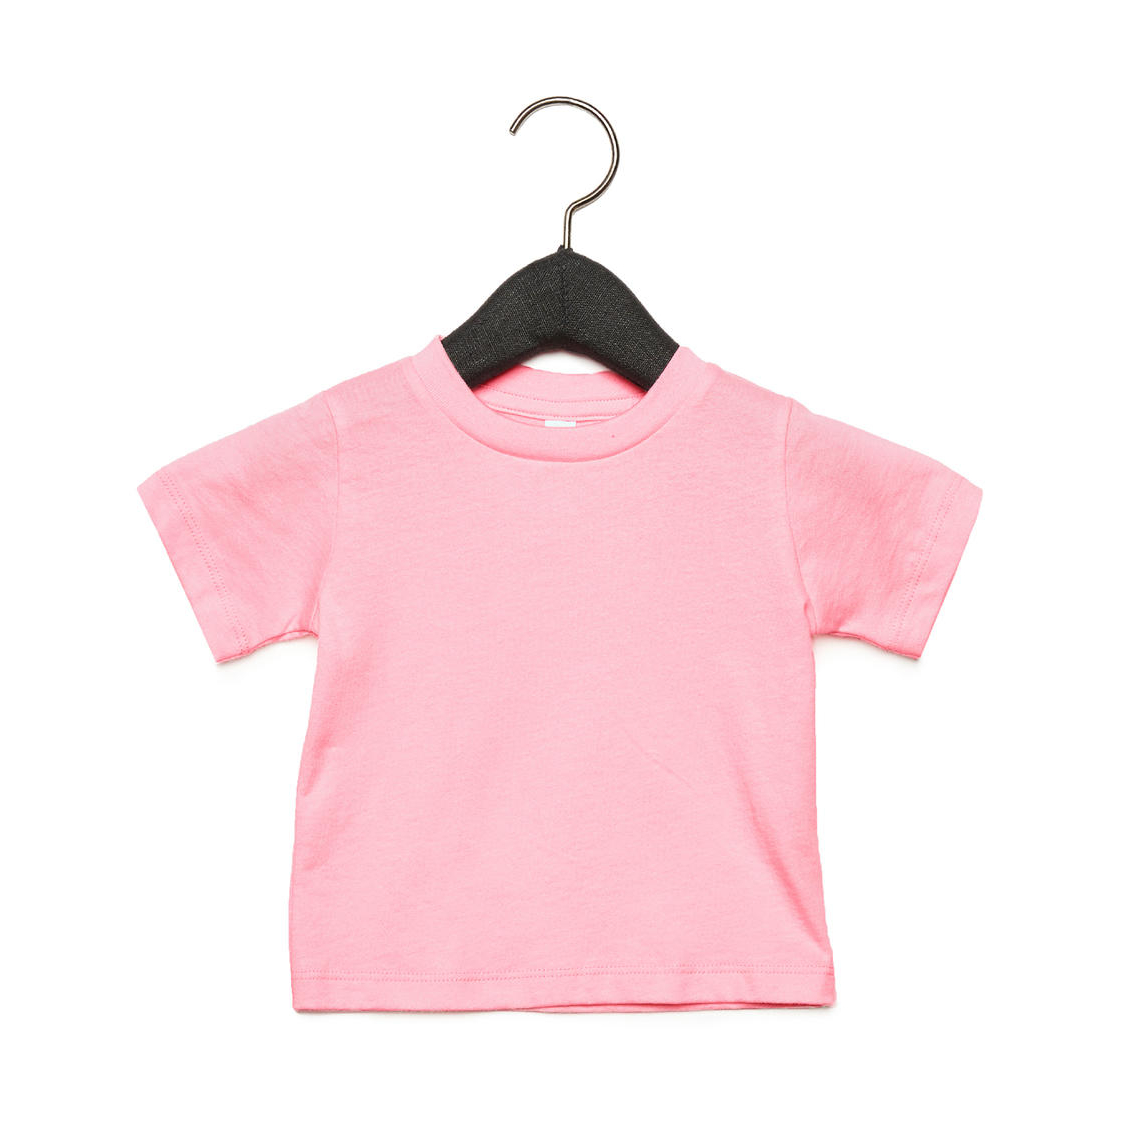 Tričko dětské Baby Jersey B + C s krátkým rukávem - růžové, 18-24 měsíců